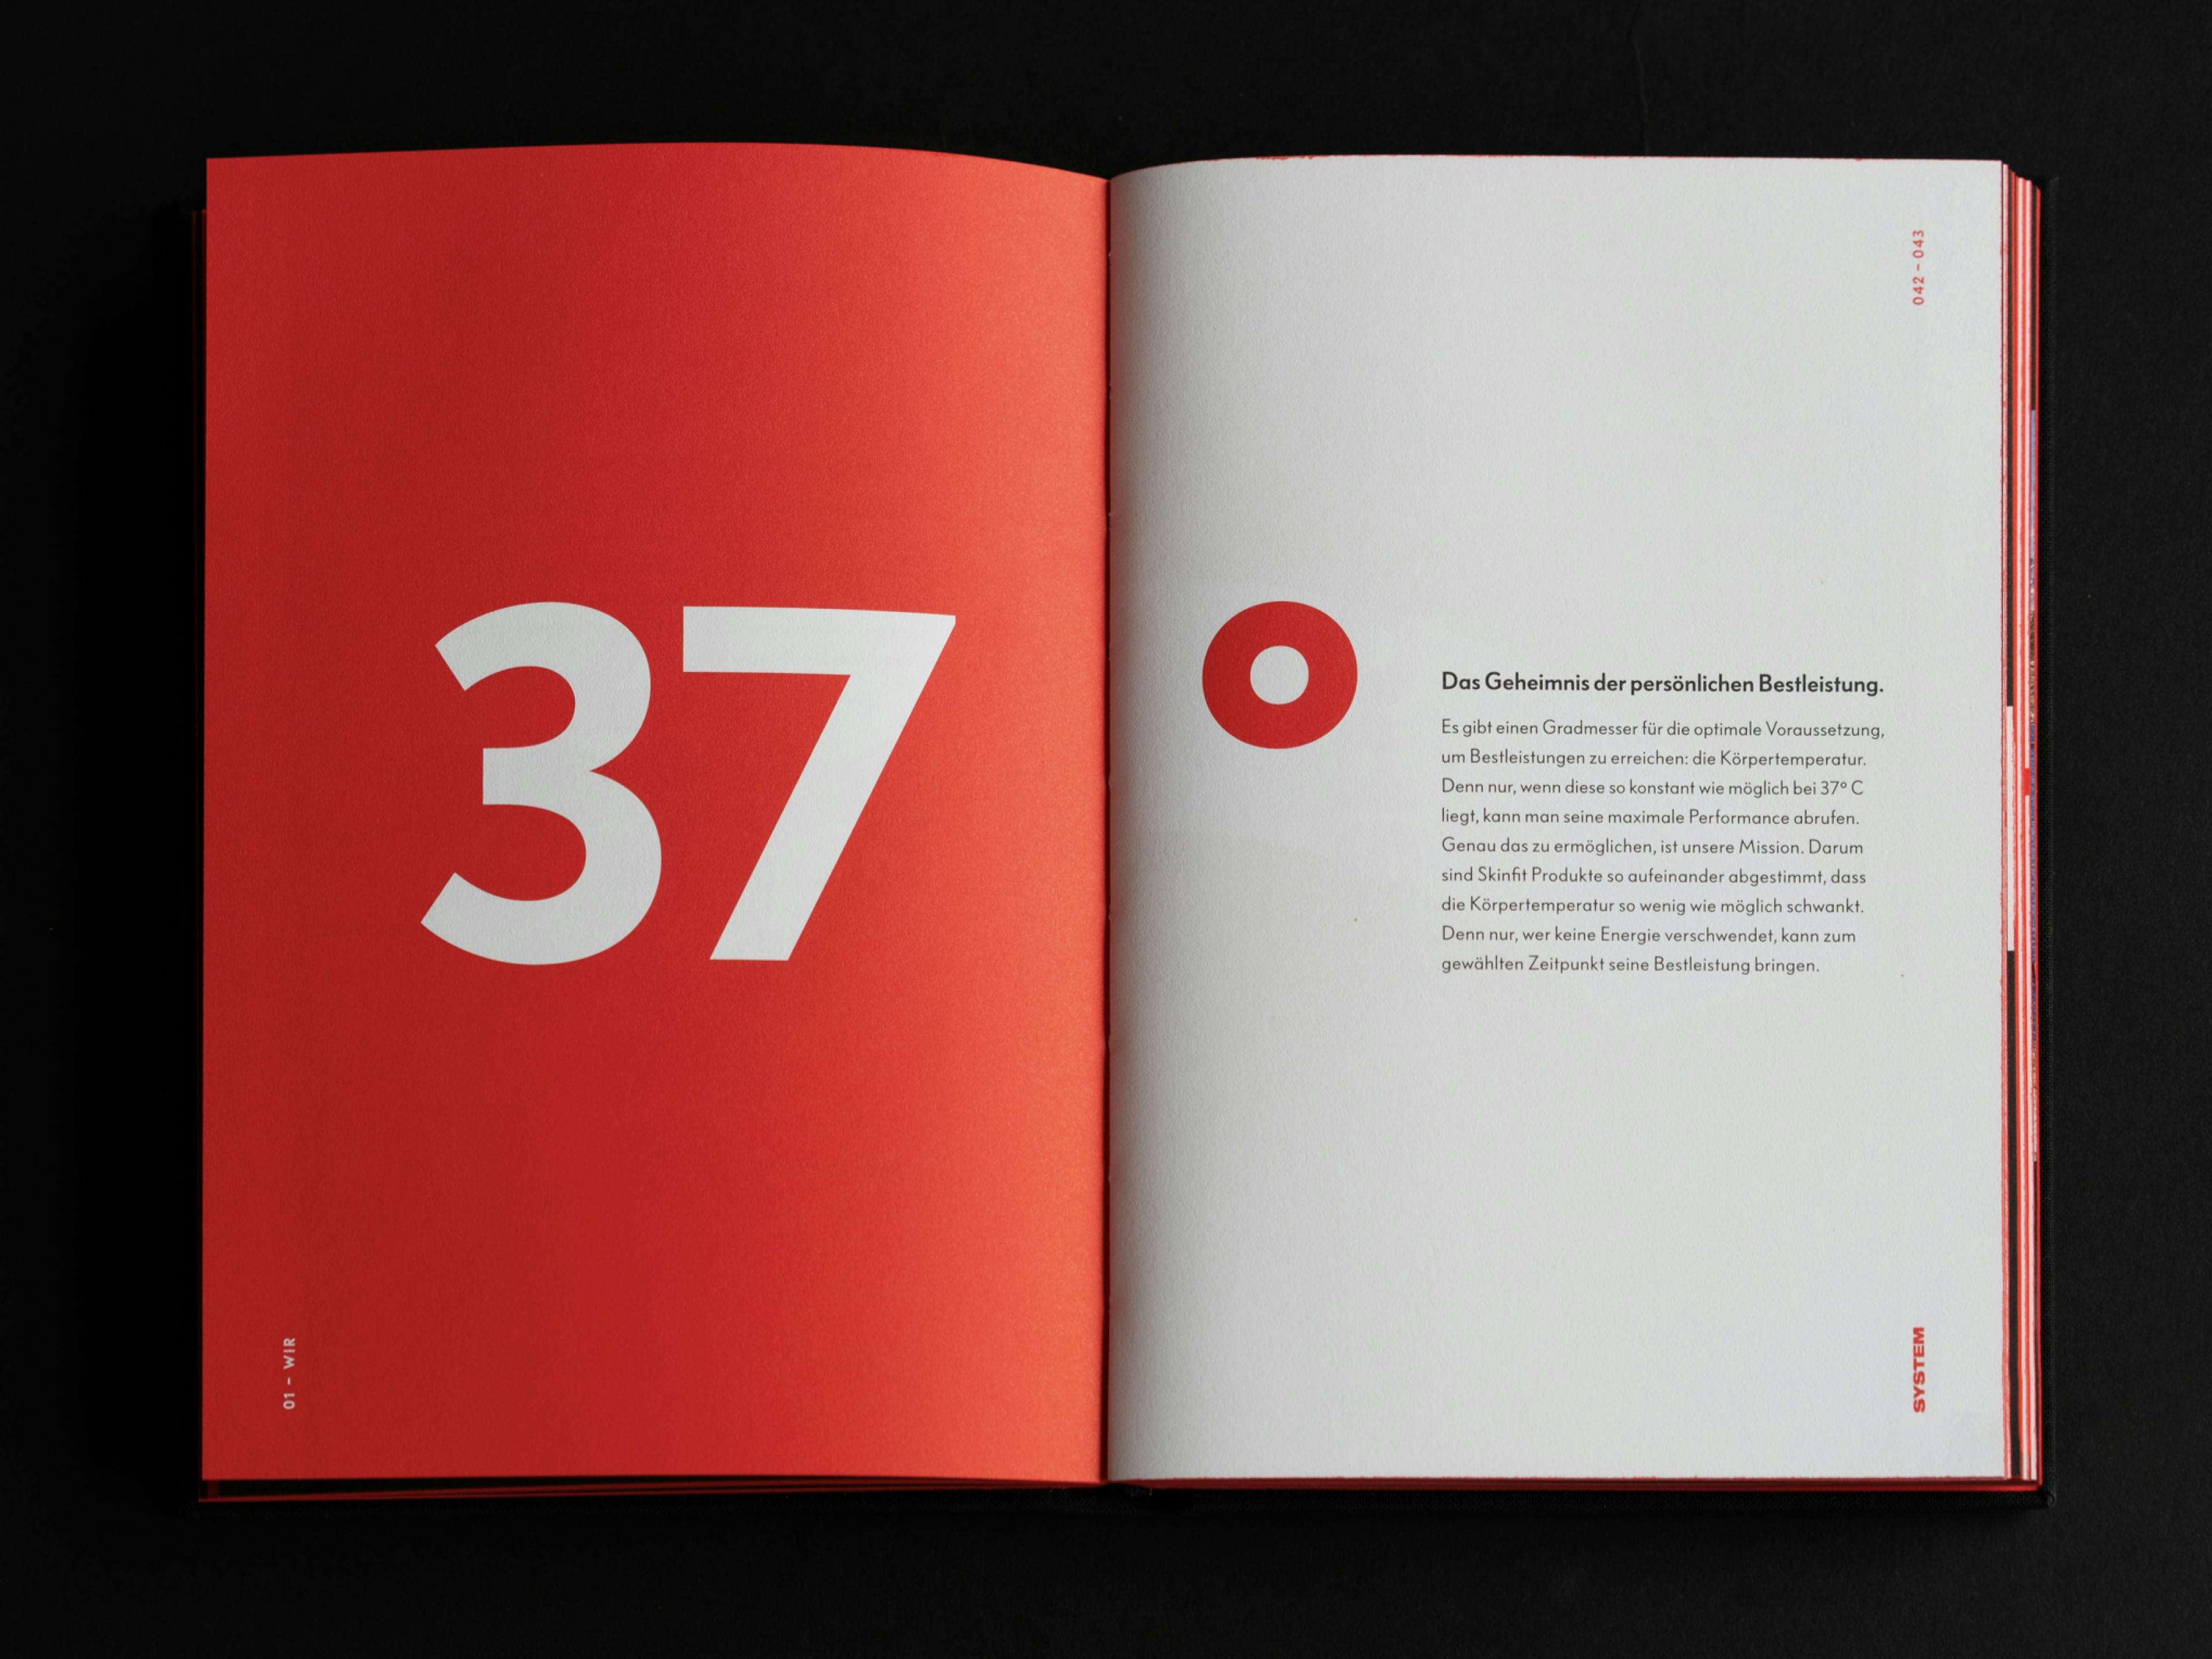 Innenseite des skinfit brandbooks zum Thema 37 Grad, rote Seite mit großen Buchstaben und Fließtext © gm gobiq